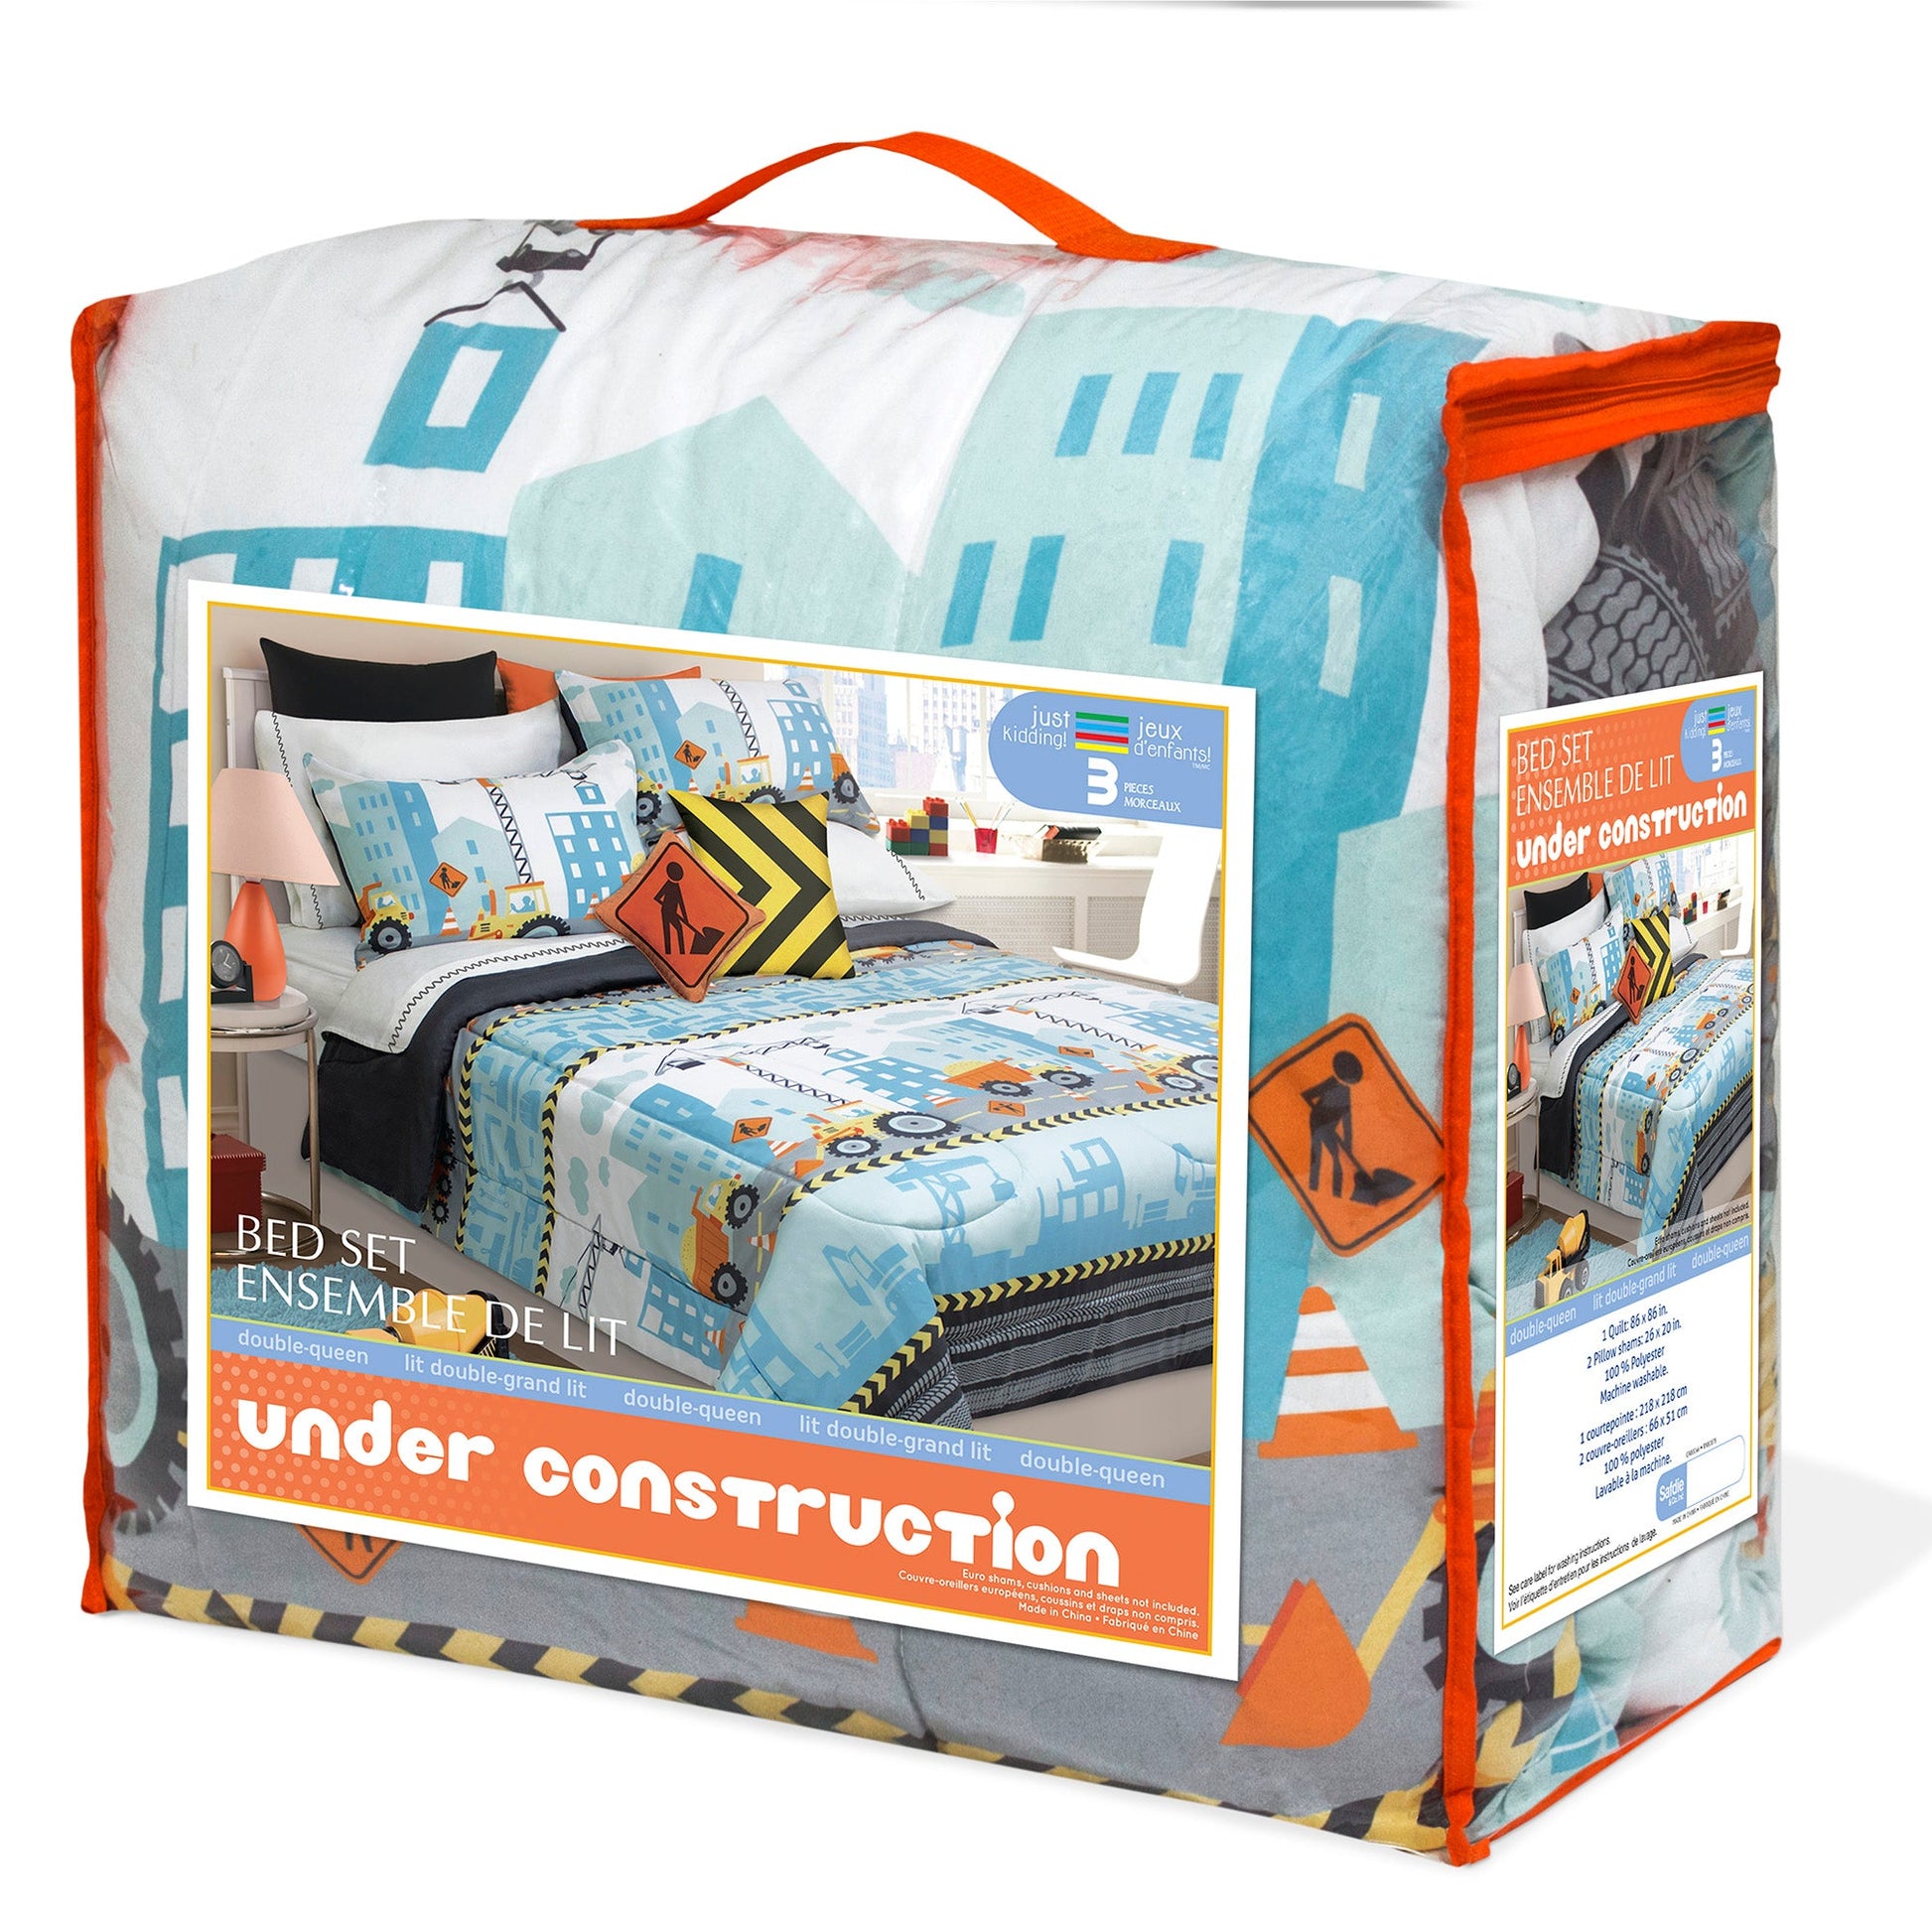 Comforter 3 Piece Set Microfiber Double/Queen Under Construction - DecoElegance - Bedding Comforter Set